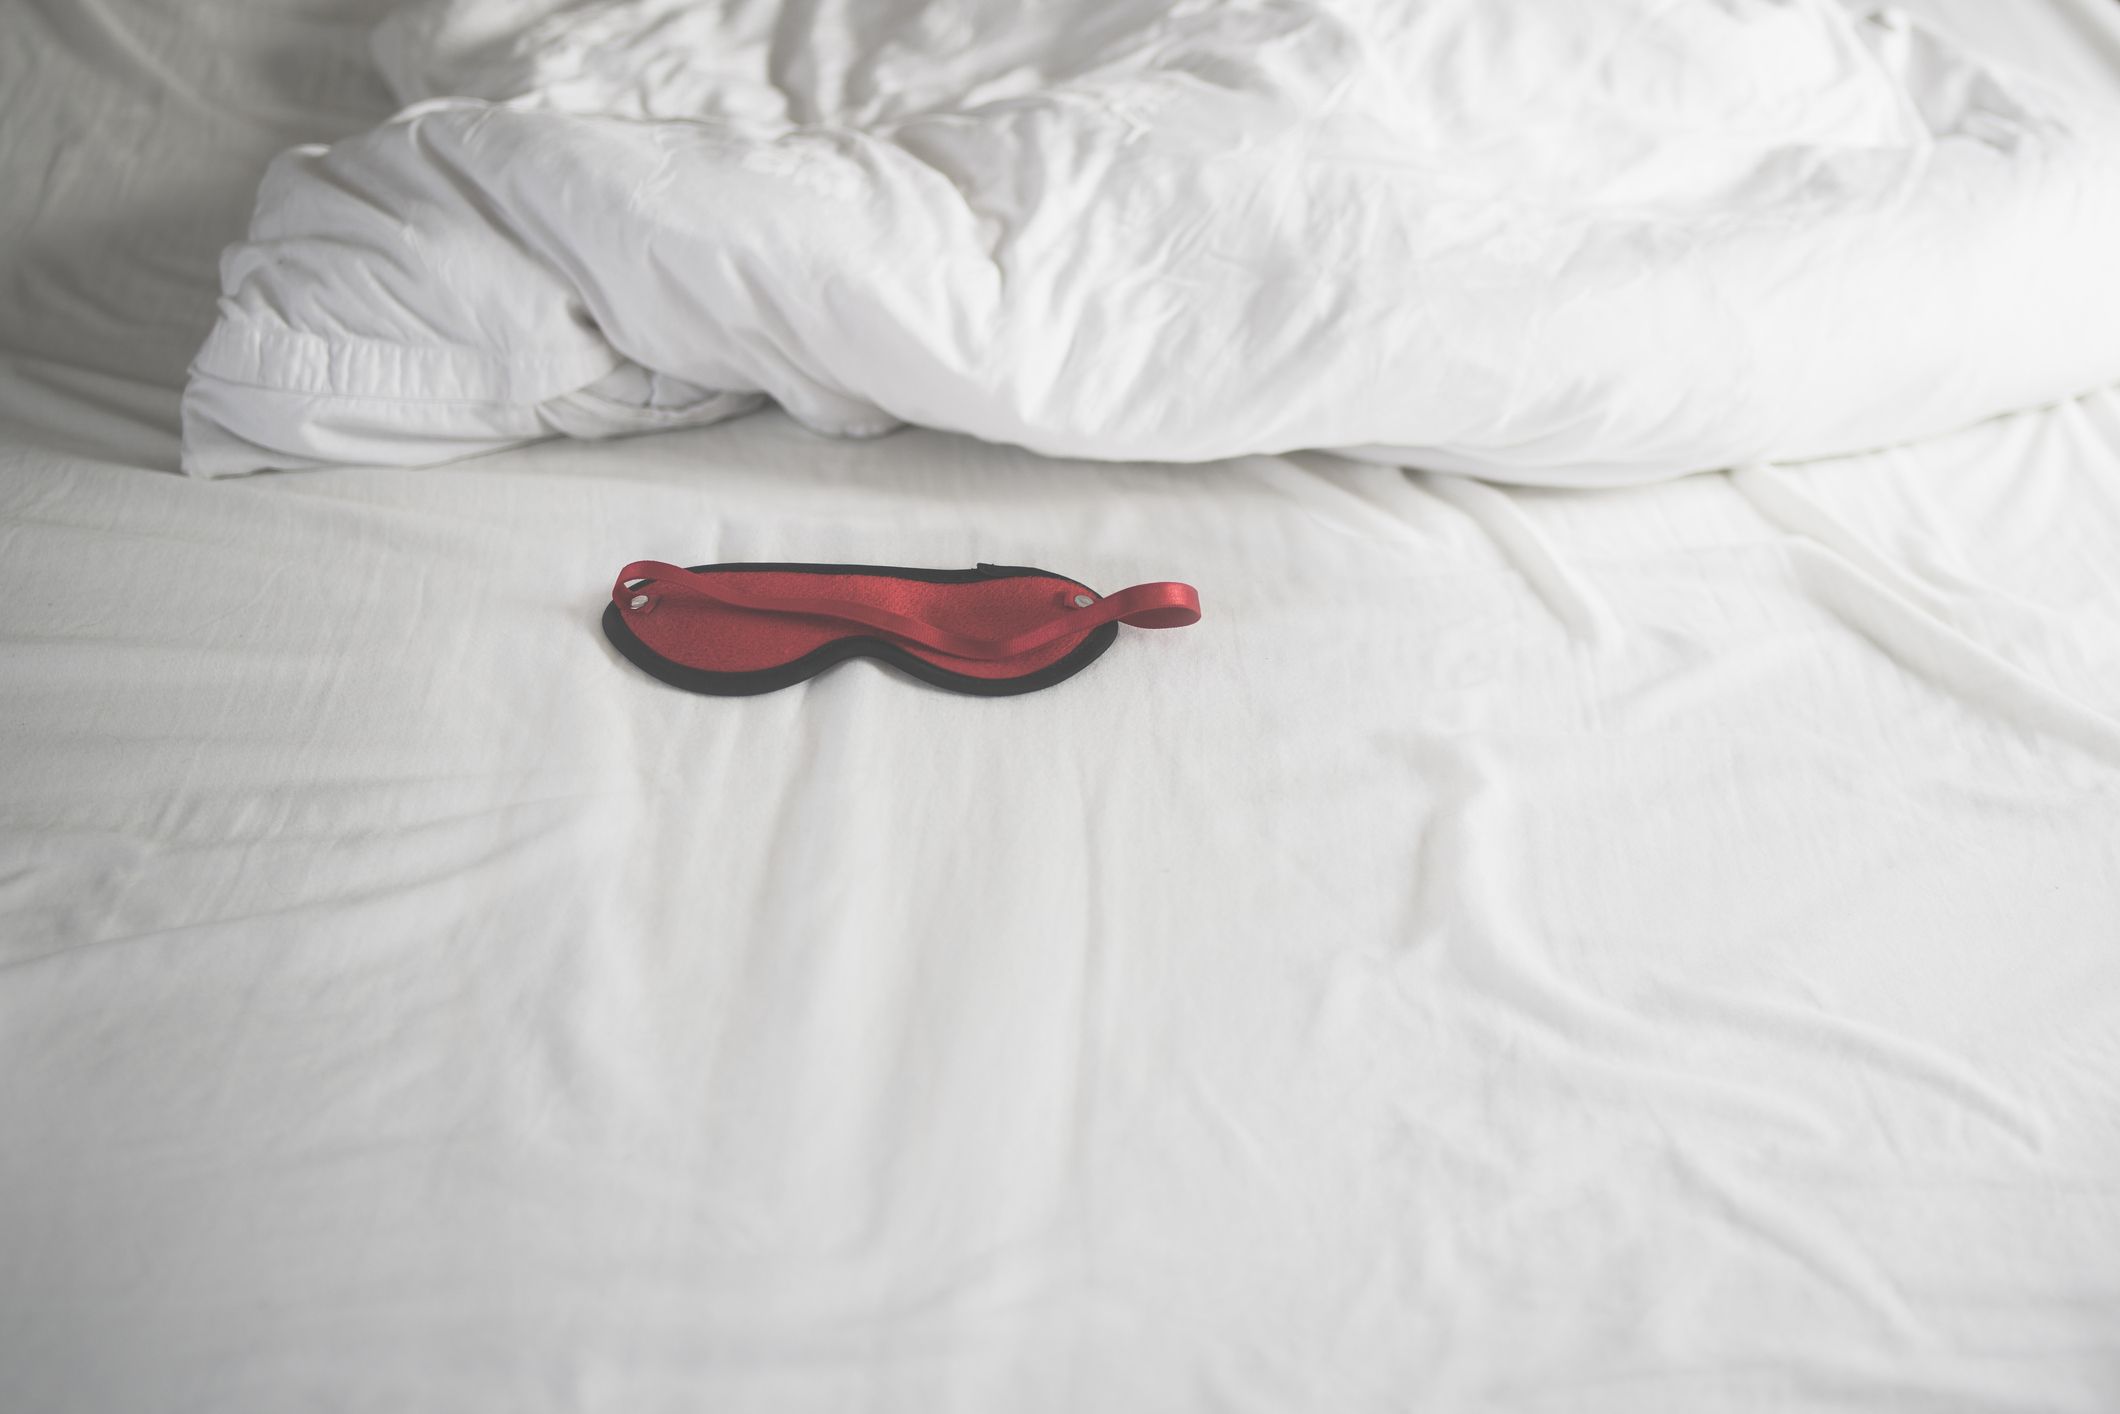 Sex sex in bed